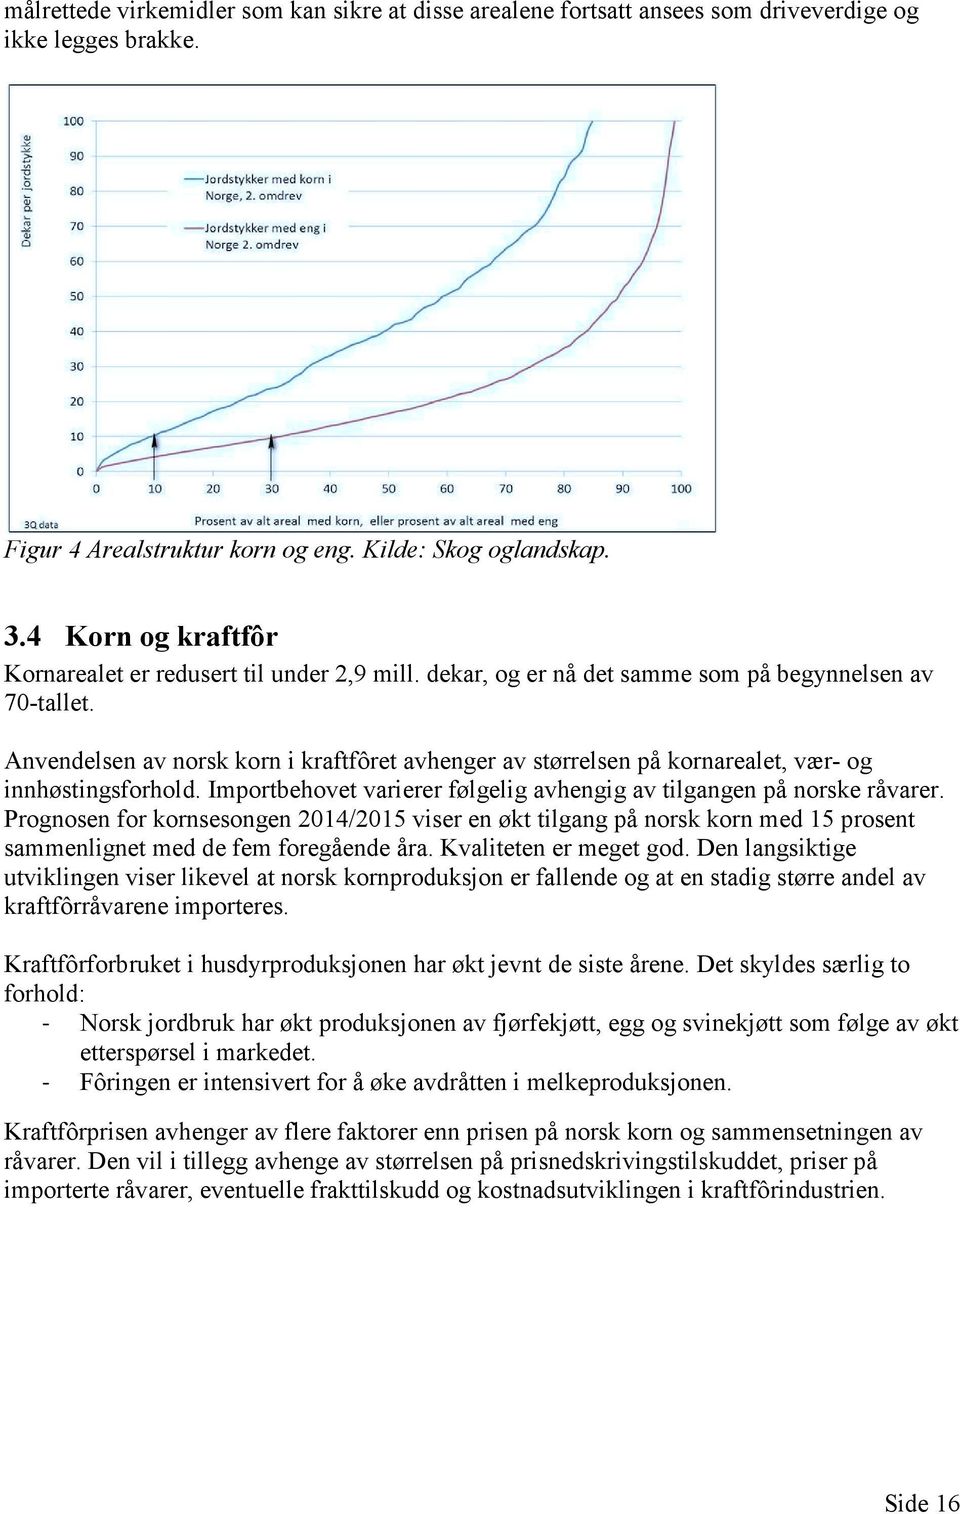 Anvendelsen av norsk korn i kraftfôret avhenger av størrelsen på kornarealet, vær- og innhøstingsforhold. Importbehovet varierer følgelig avhengig av tilgangen på norske råvarer.